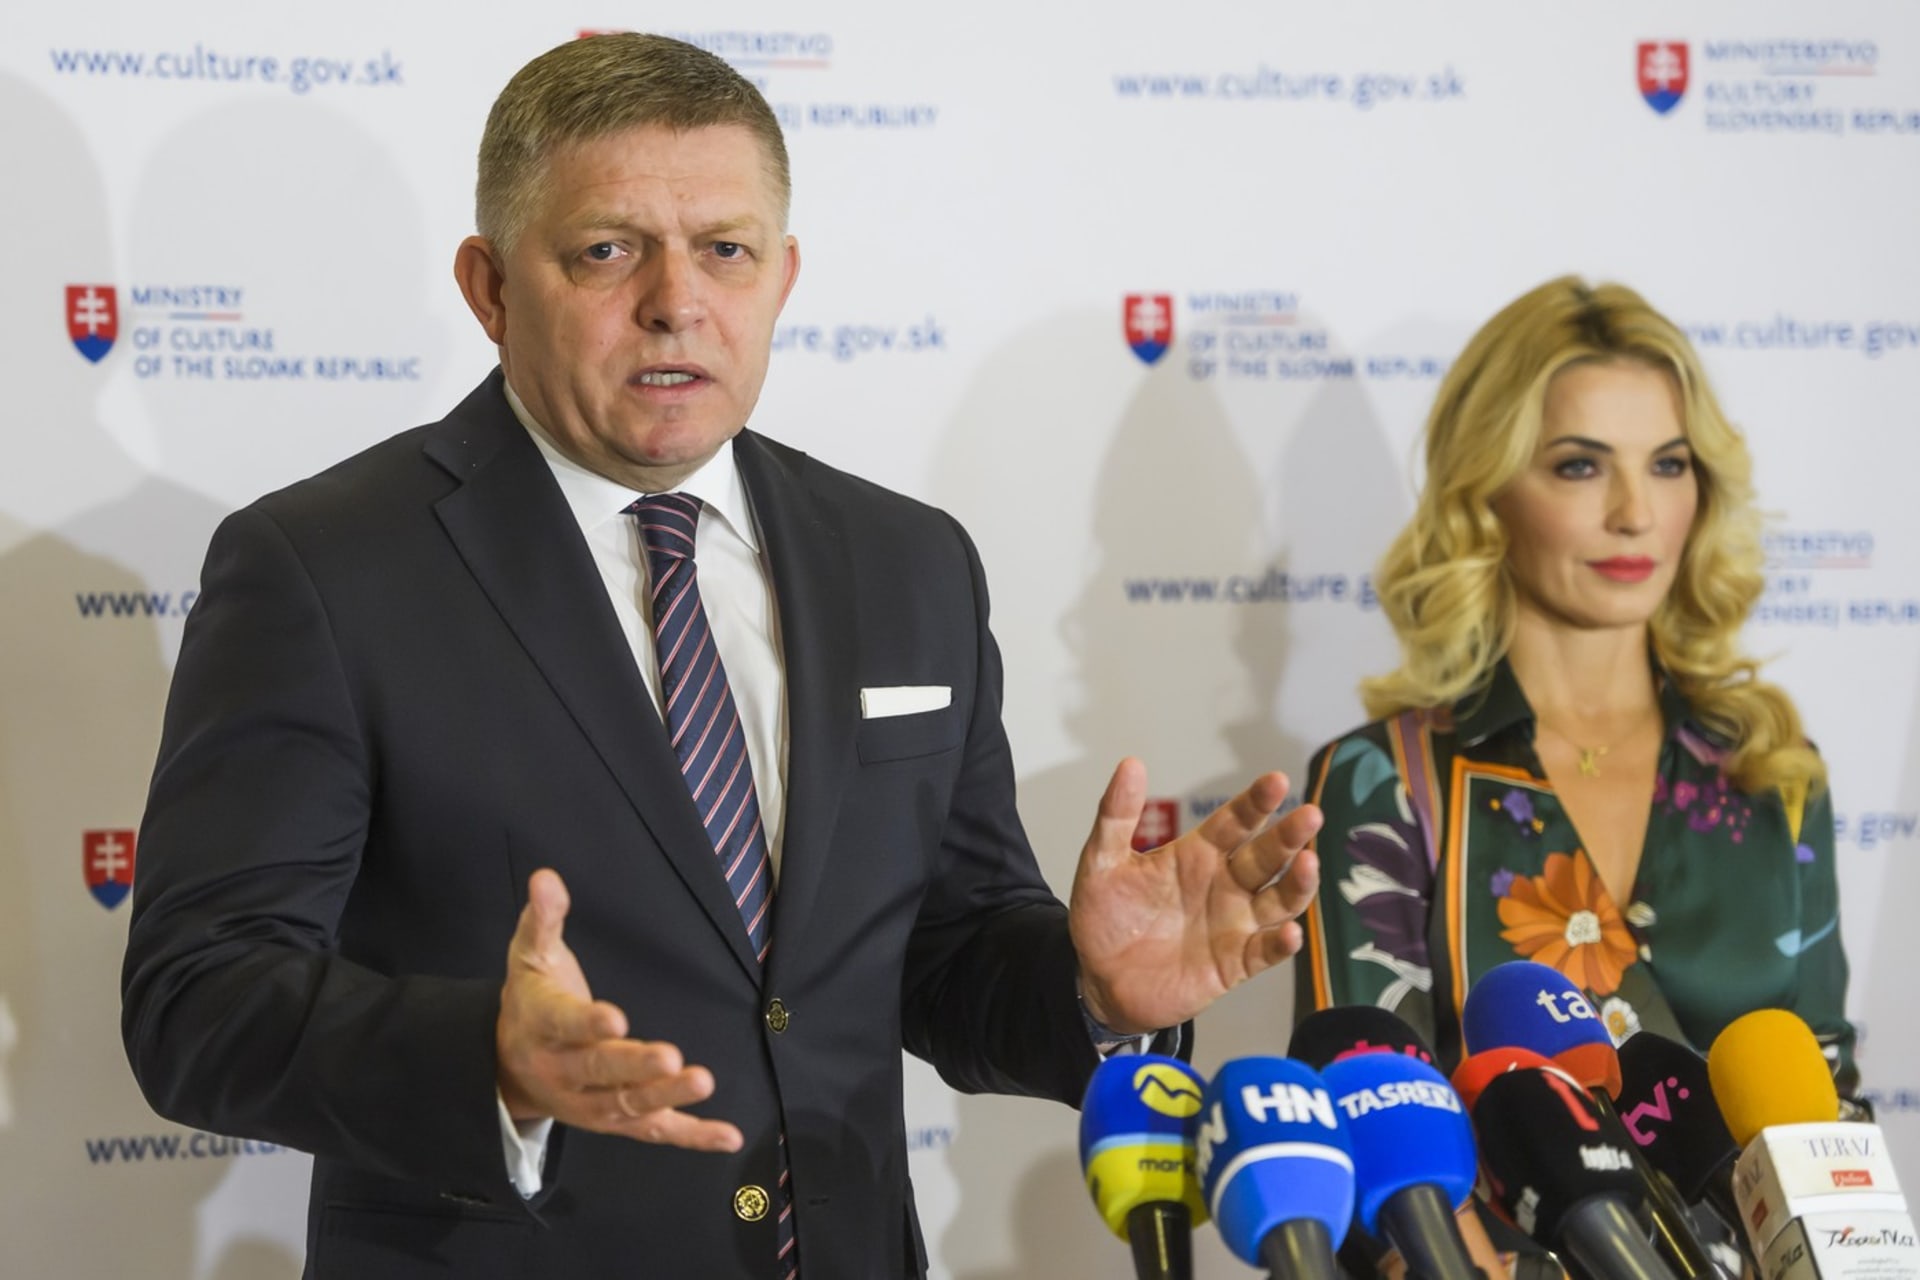 Slovenský premiér Robert Fico a jeho ministryně kultury Martina Šimkovičová